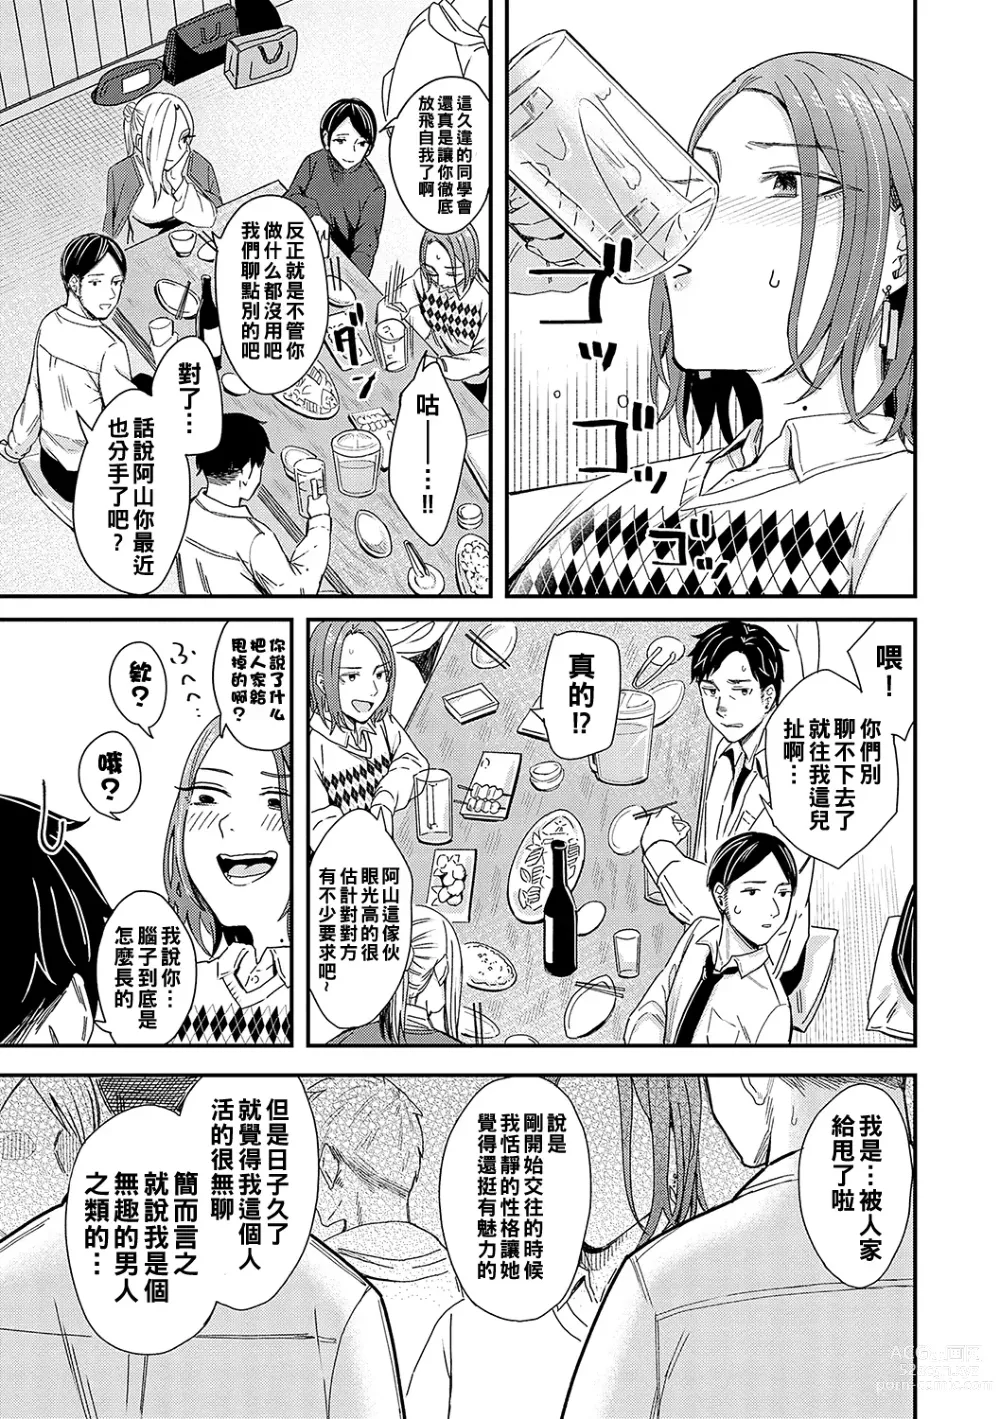 Page 3 of manga Kudaranai Renai Eiga no You ni... - Like a crappy romance movie...